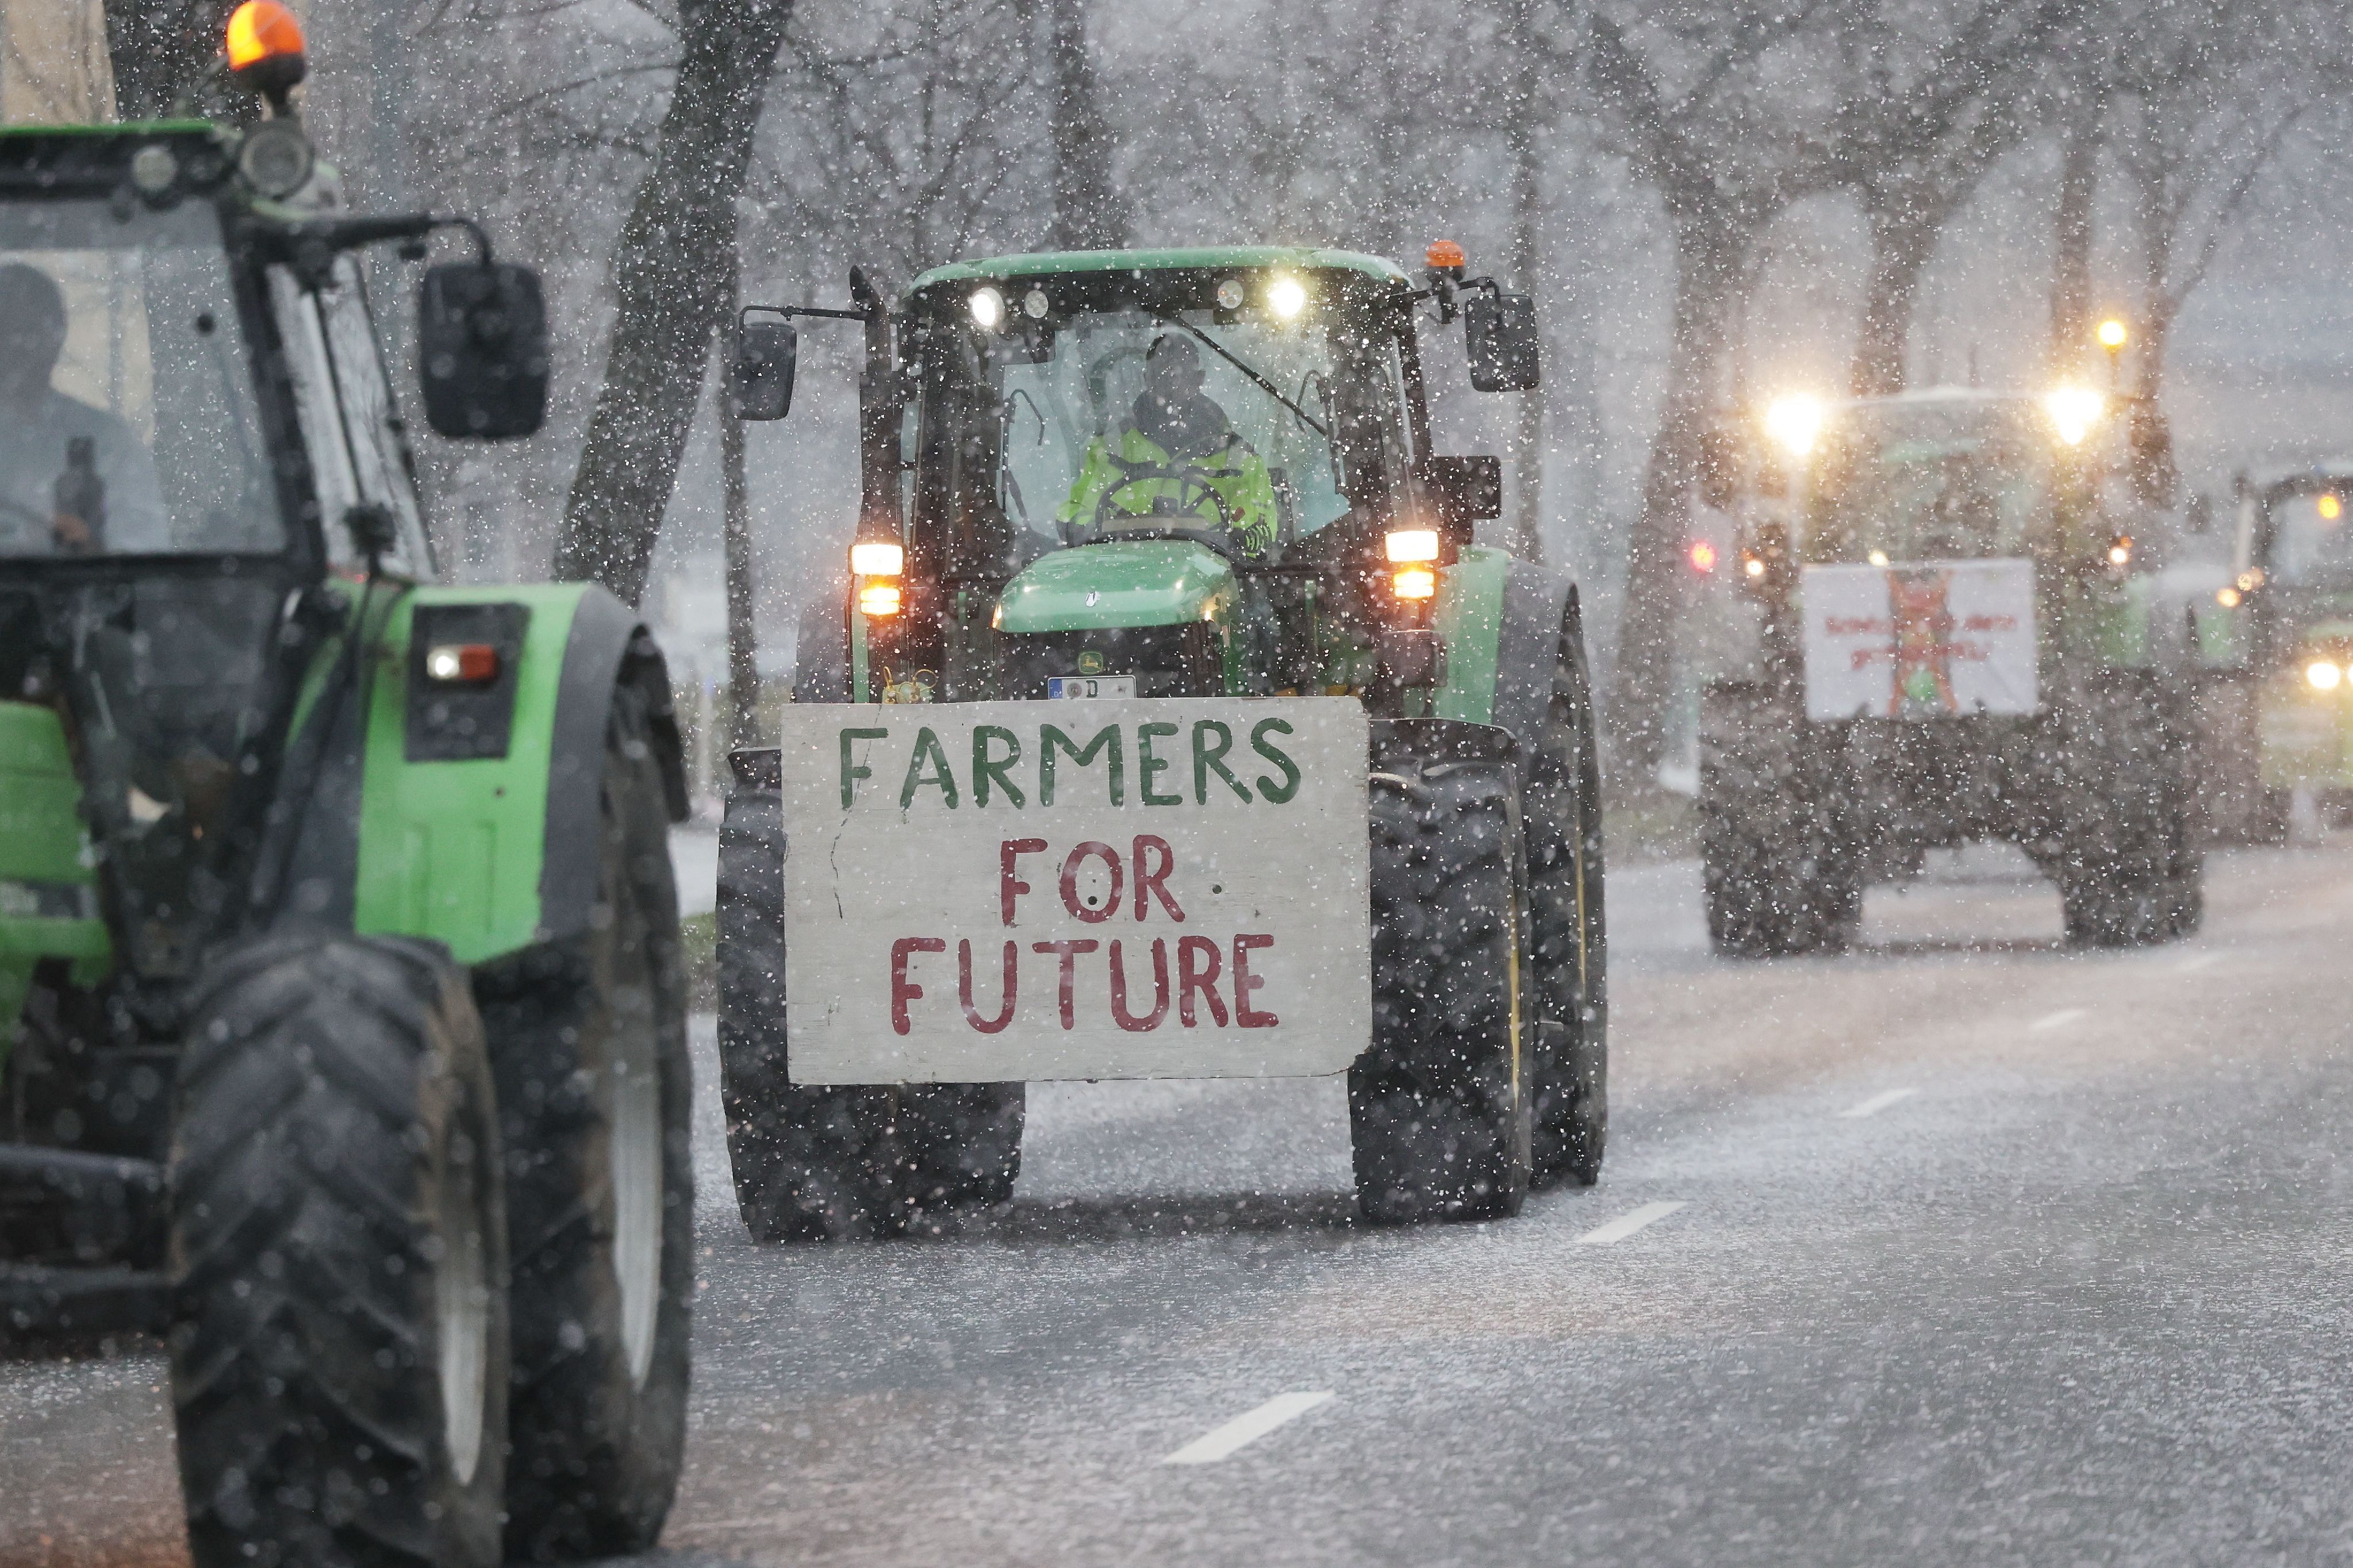 Im Rahmen der Protest-Aktionswoche der Landwirt:innen fahren die Traktoren auch über eine schneebedeckte Straße in Düsseldorf. Auf einem Fahrzeug haben Landwirte dabei ein Schild mit der Aufschrift "Farmers For Future" befestigt.